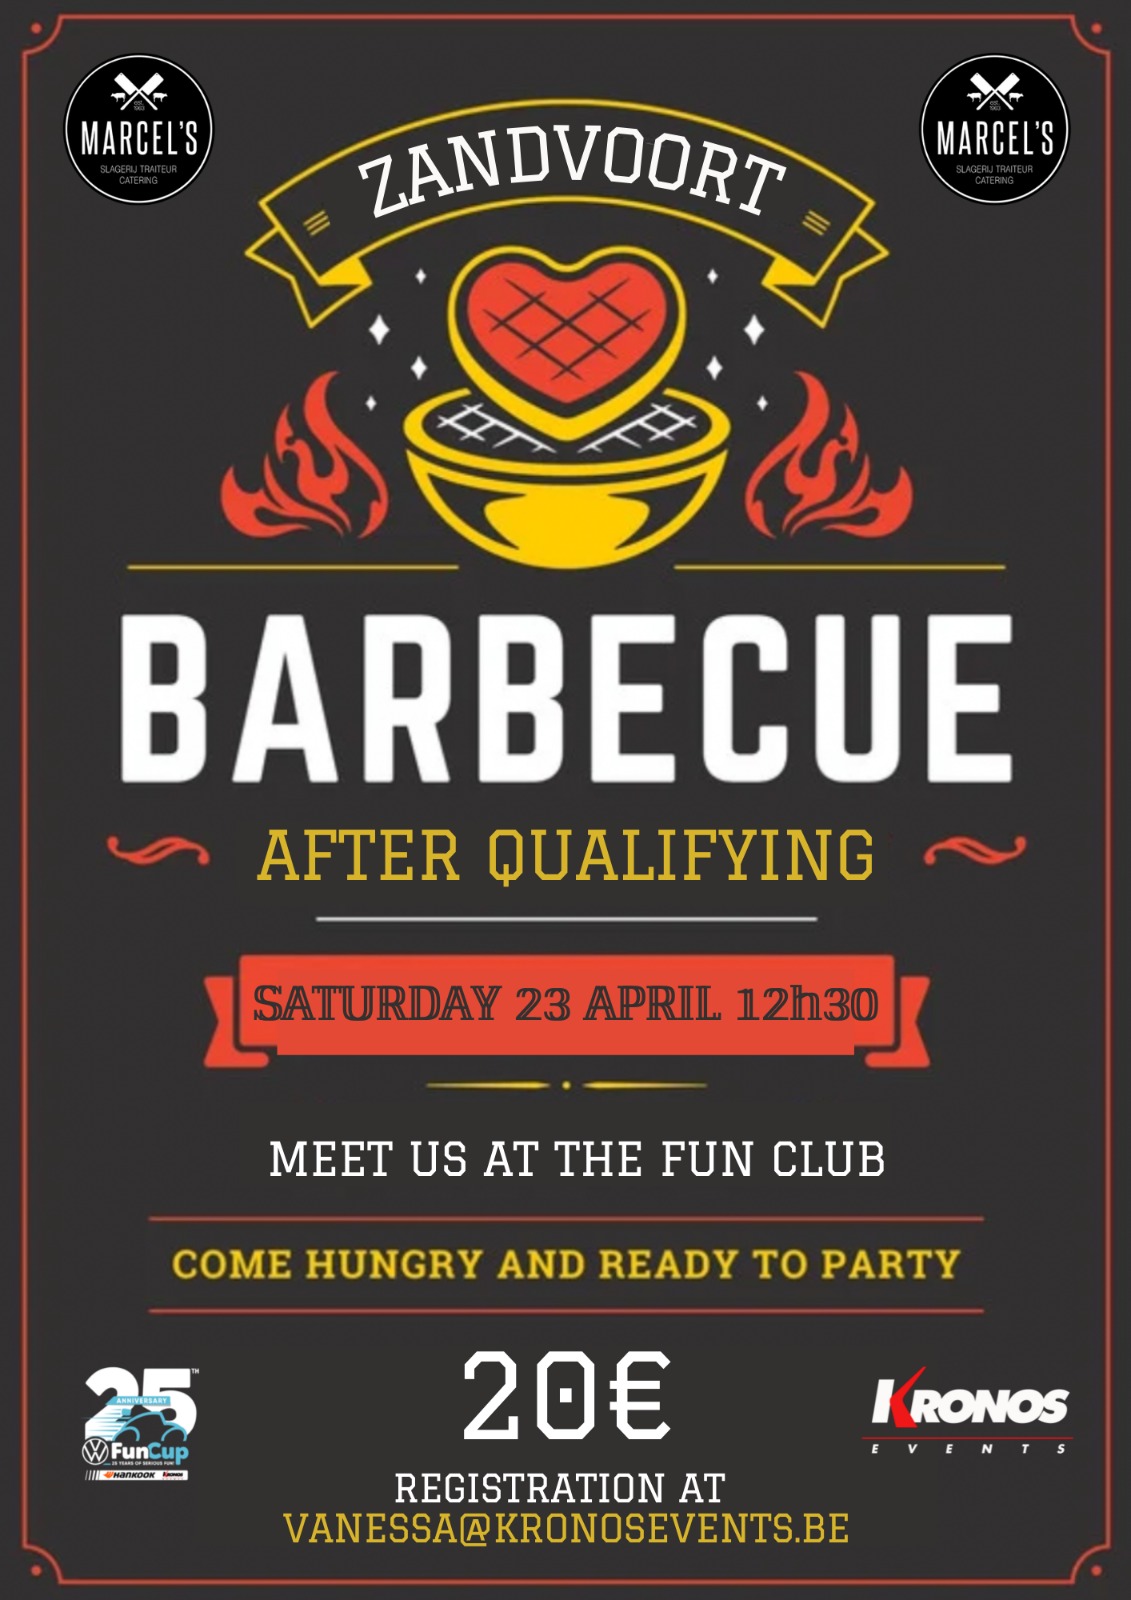 image 1 - Barbecue met ons mee in Zandvoort!